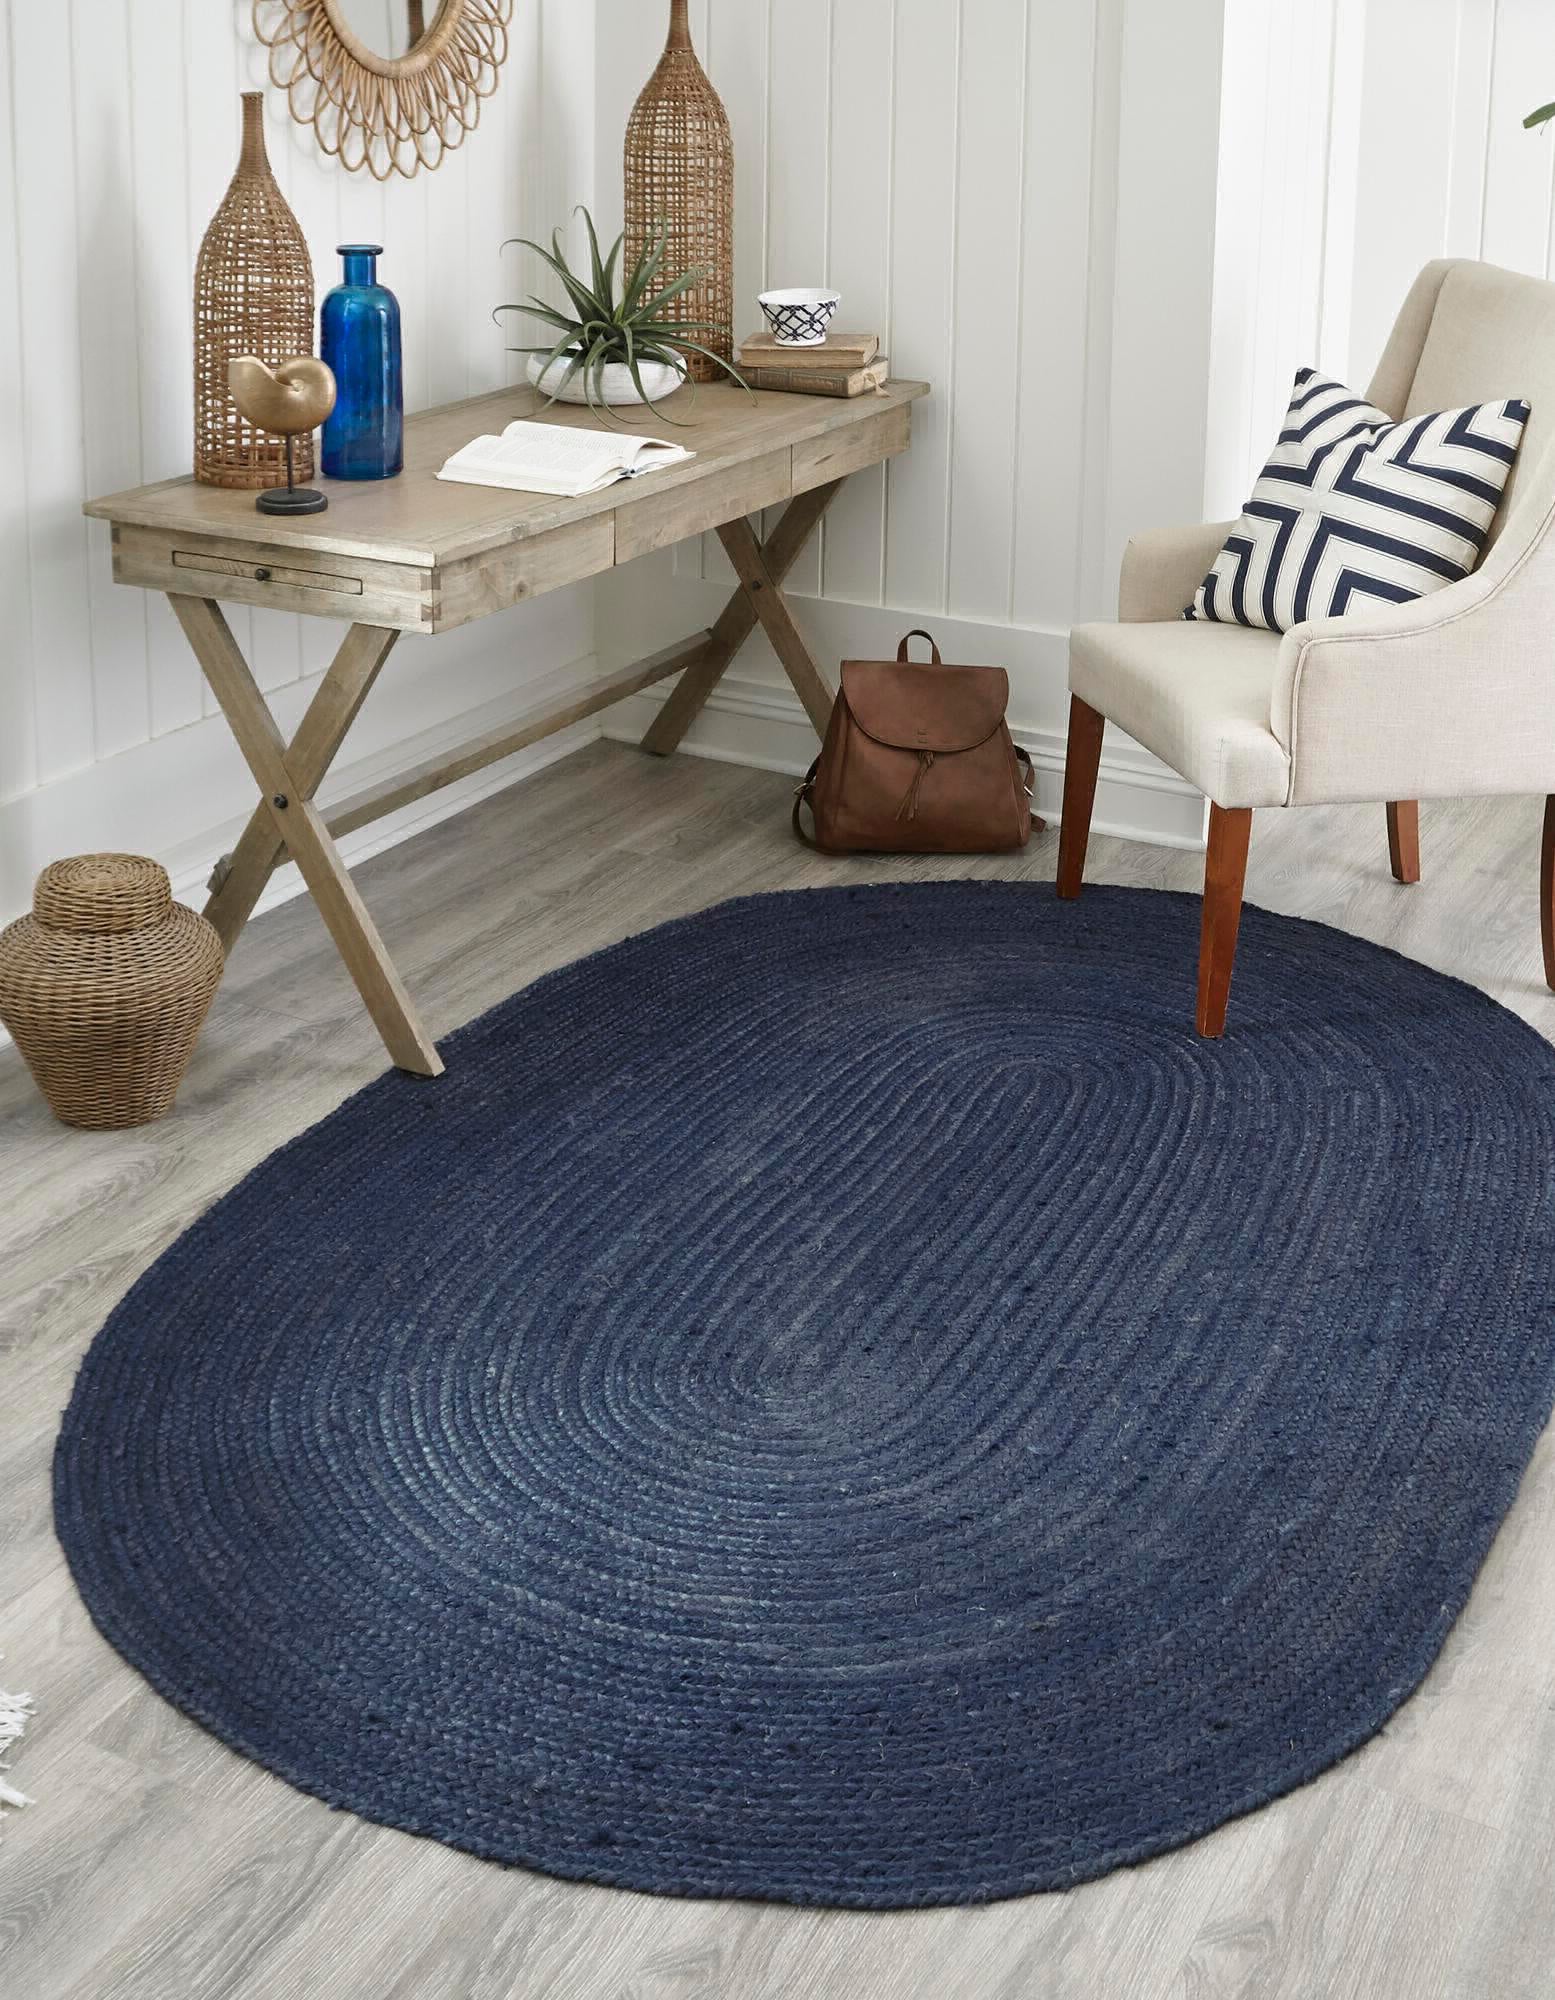 Natural Oval Jute Carpet for Living Room - Carpet Live